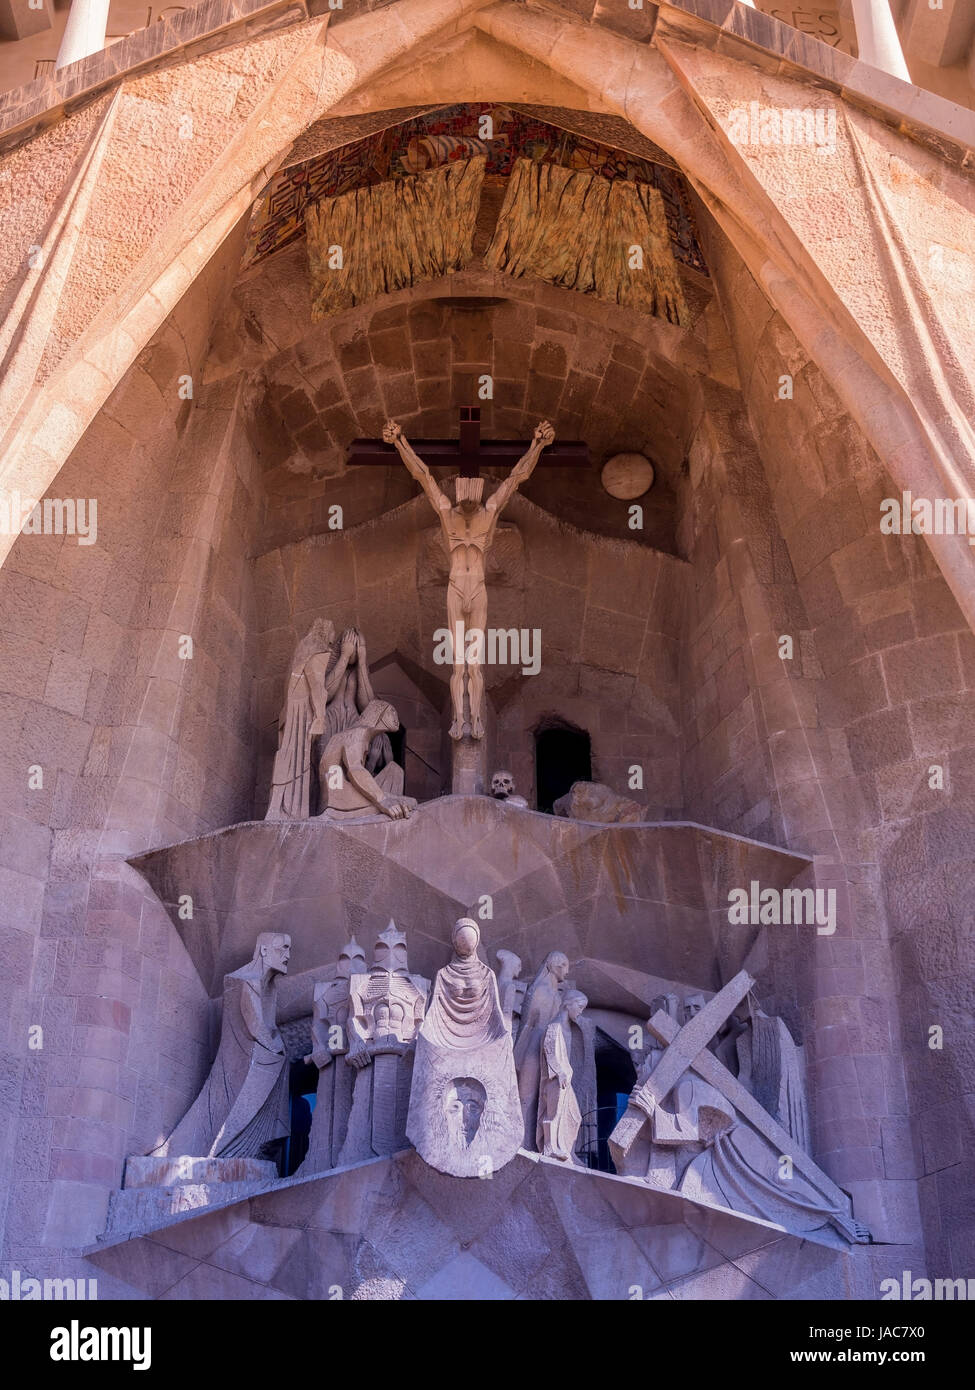 Grabación de campo de la Sagrada Familia en Barcelona, España, Aussenaufnahme der a la Sagrada Familia en Barcelona, Spanien Foto de stock